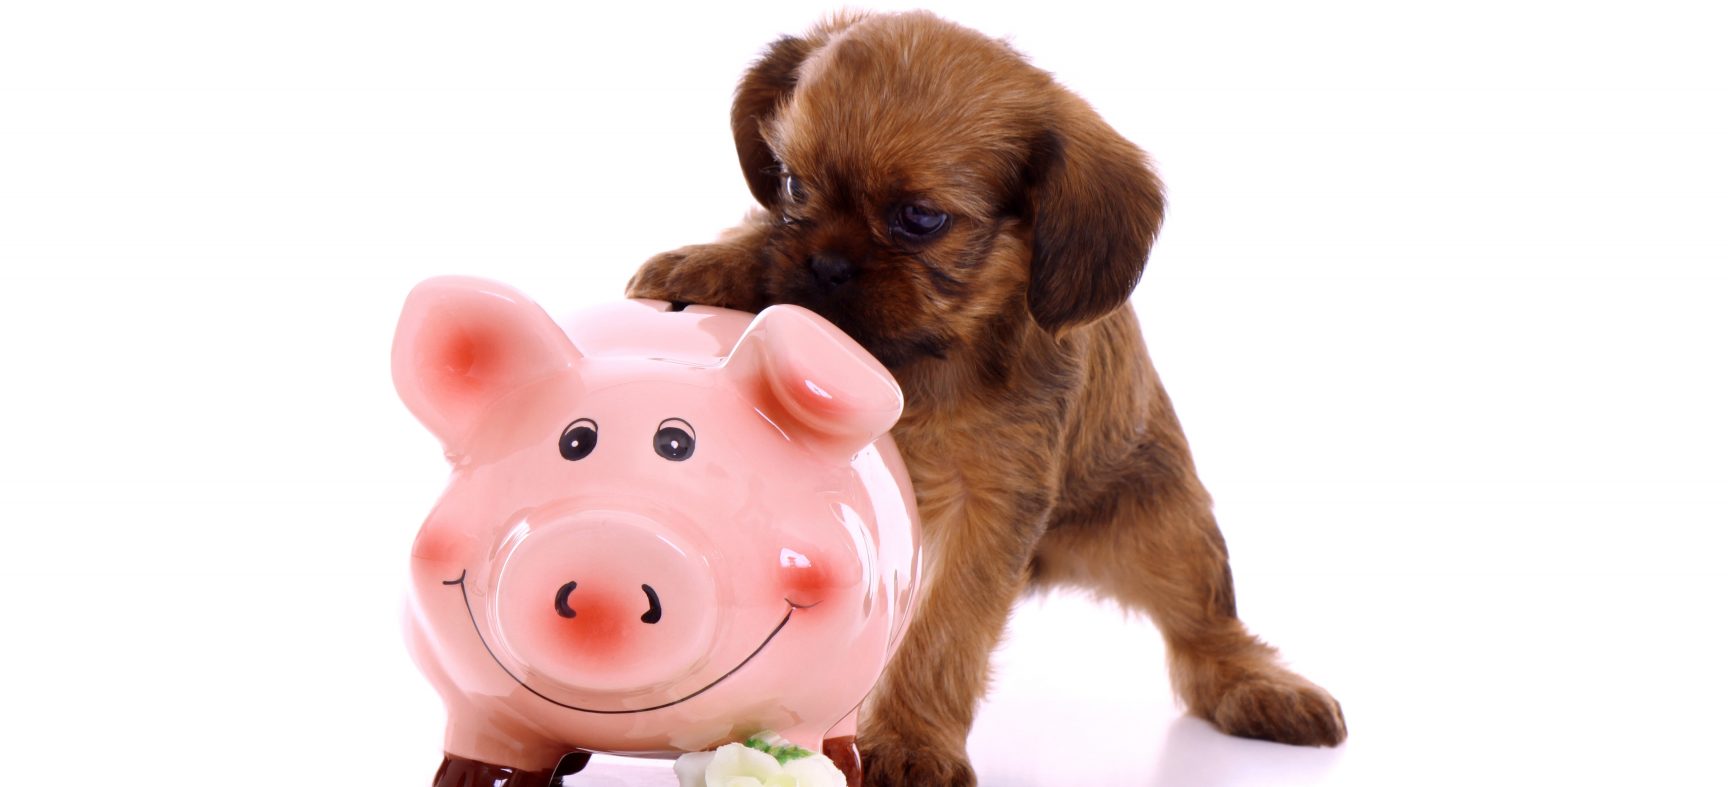 Votre engagement financier envers votre chien : 45 000 $ - Capsule DAQ N° 65